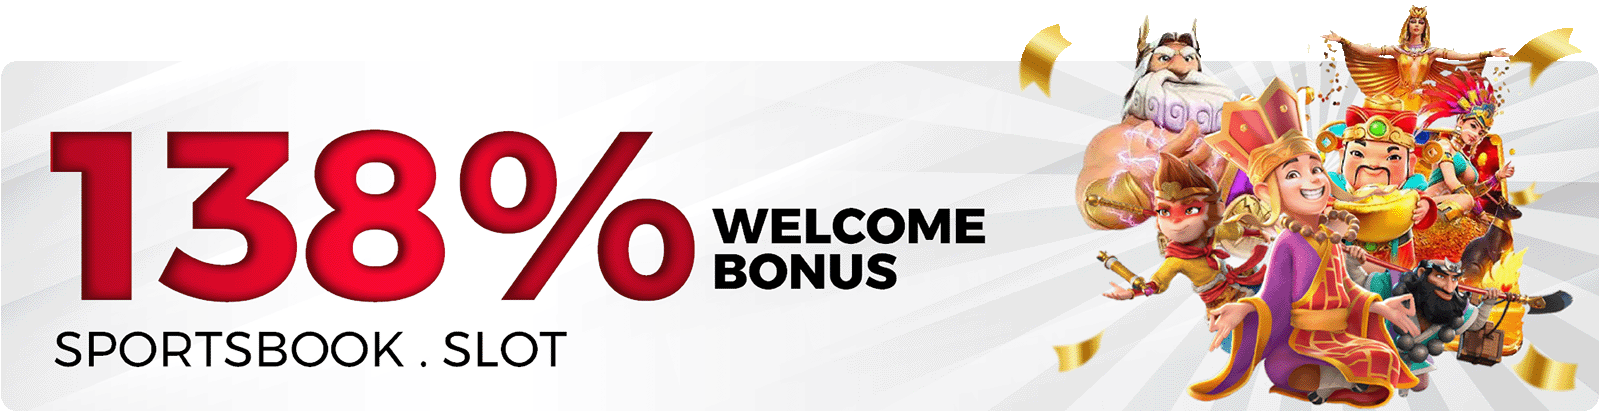 138% Welcome Bonus Slots & Sportsbook